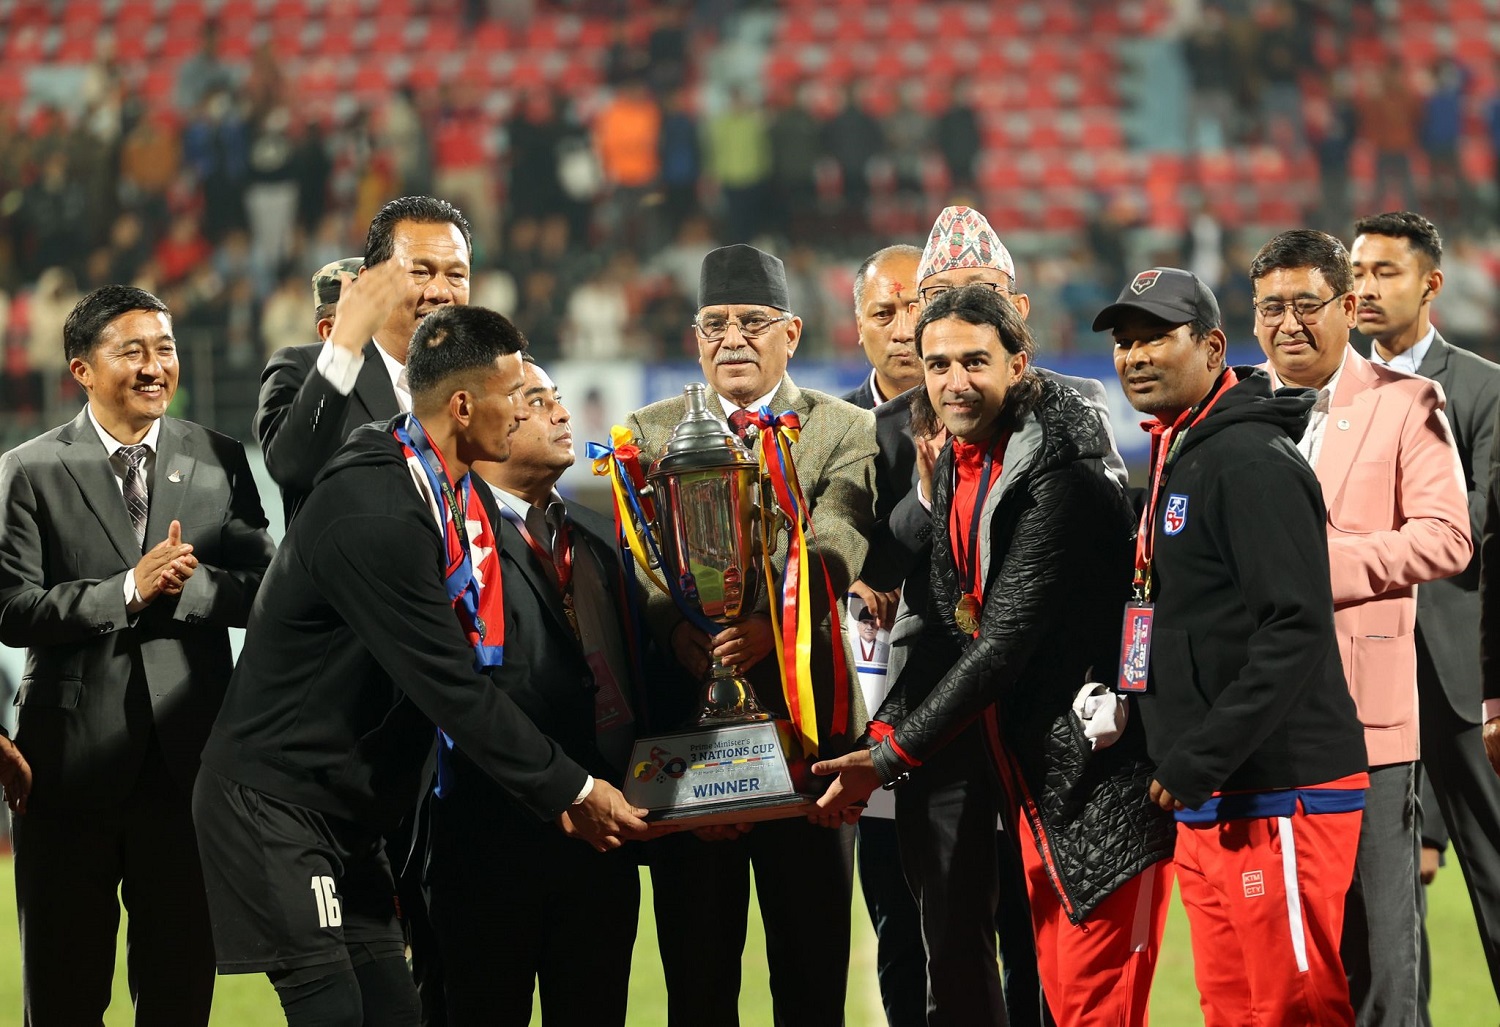 नेपाललाई प्रधानमन्त्री त्रिदेशीय फुटबल प्रतियोगिताको उपाधि